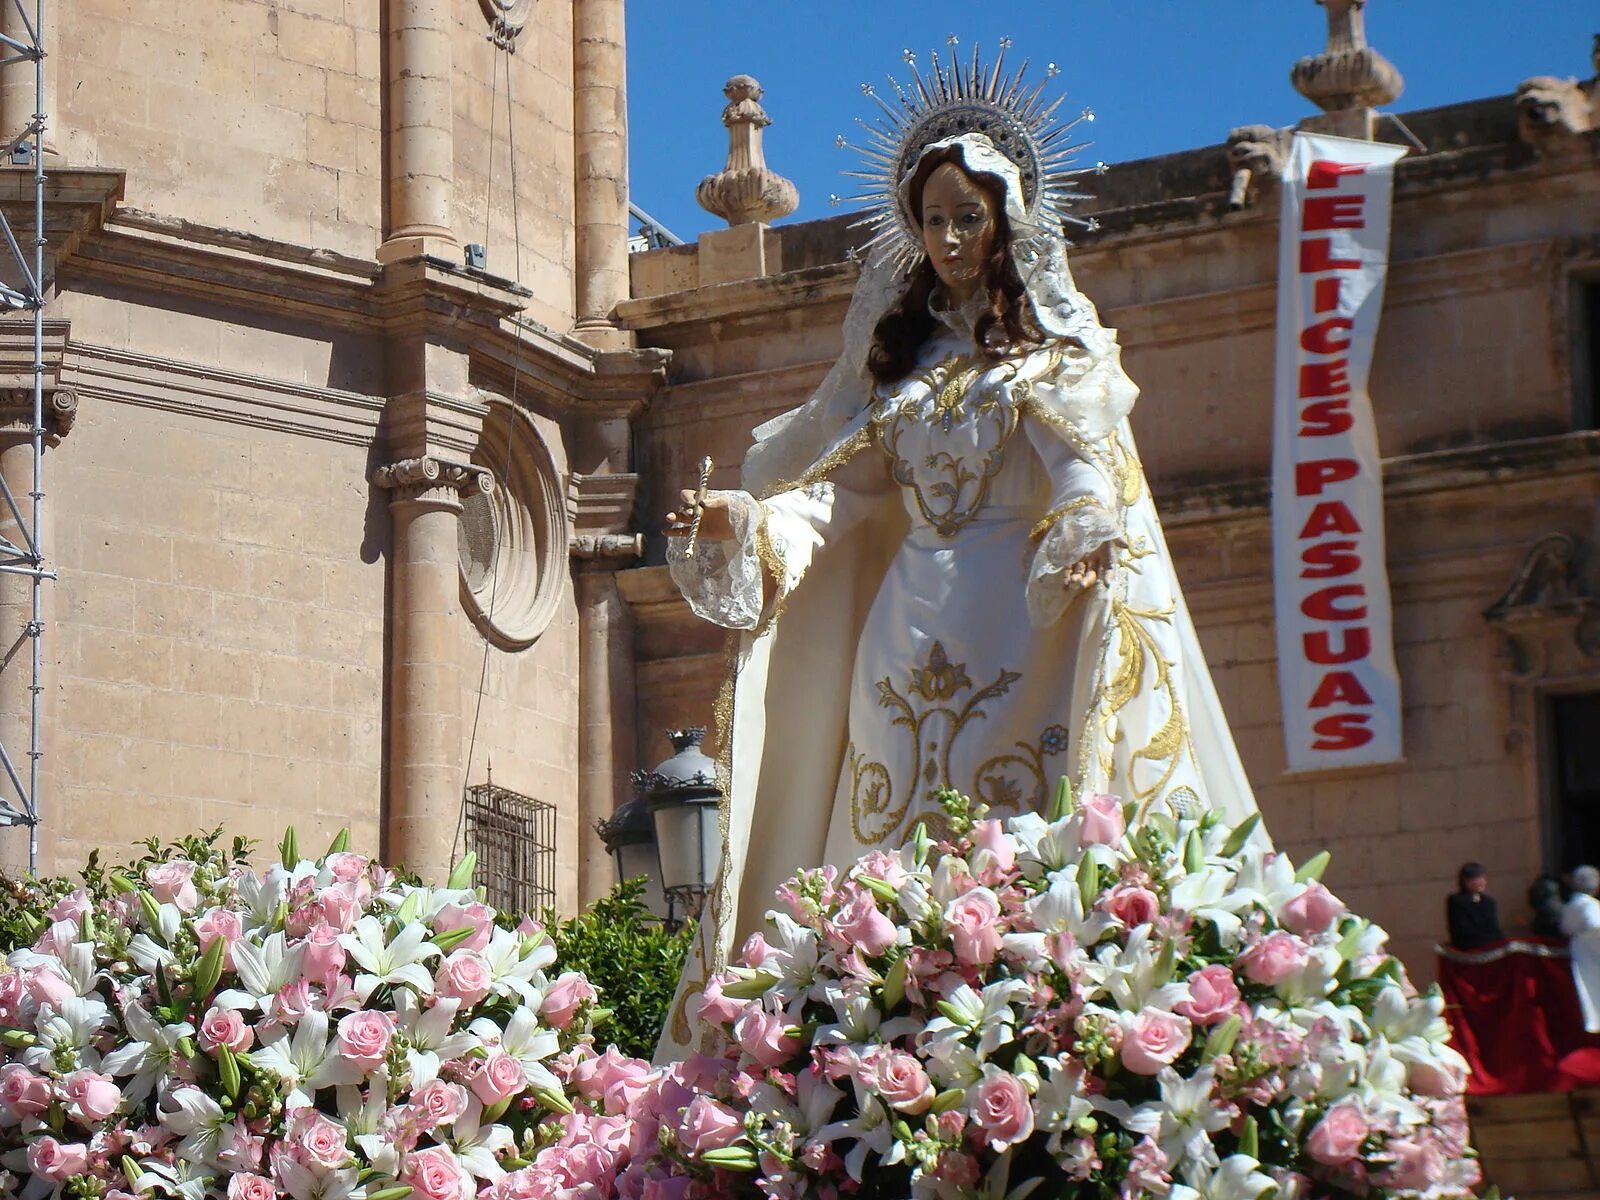 La virgen москва. Шествие в честь Virgen de los Desamparados. Coronaci'on в la Virgen.